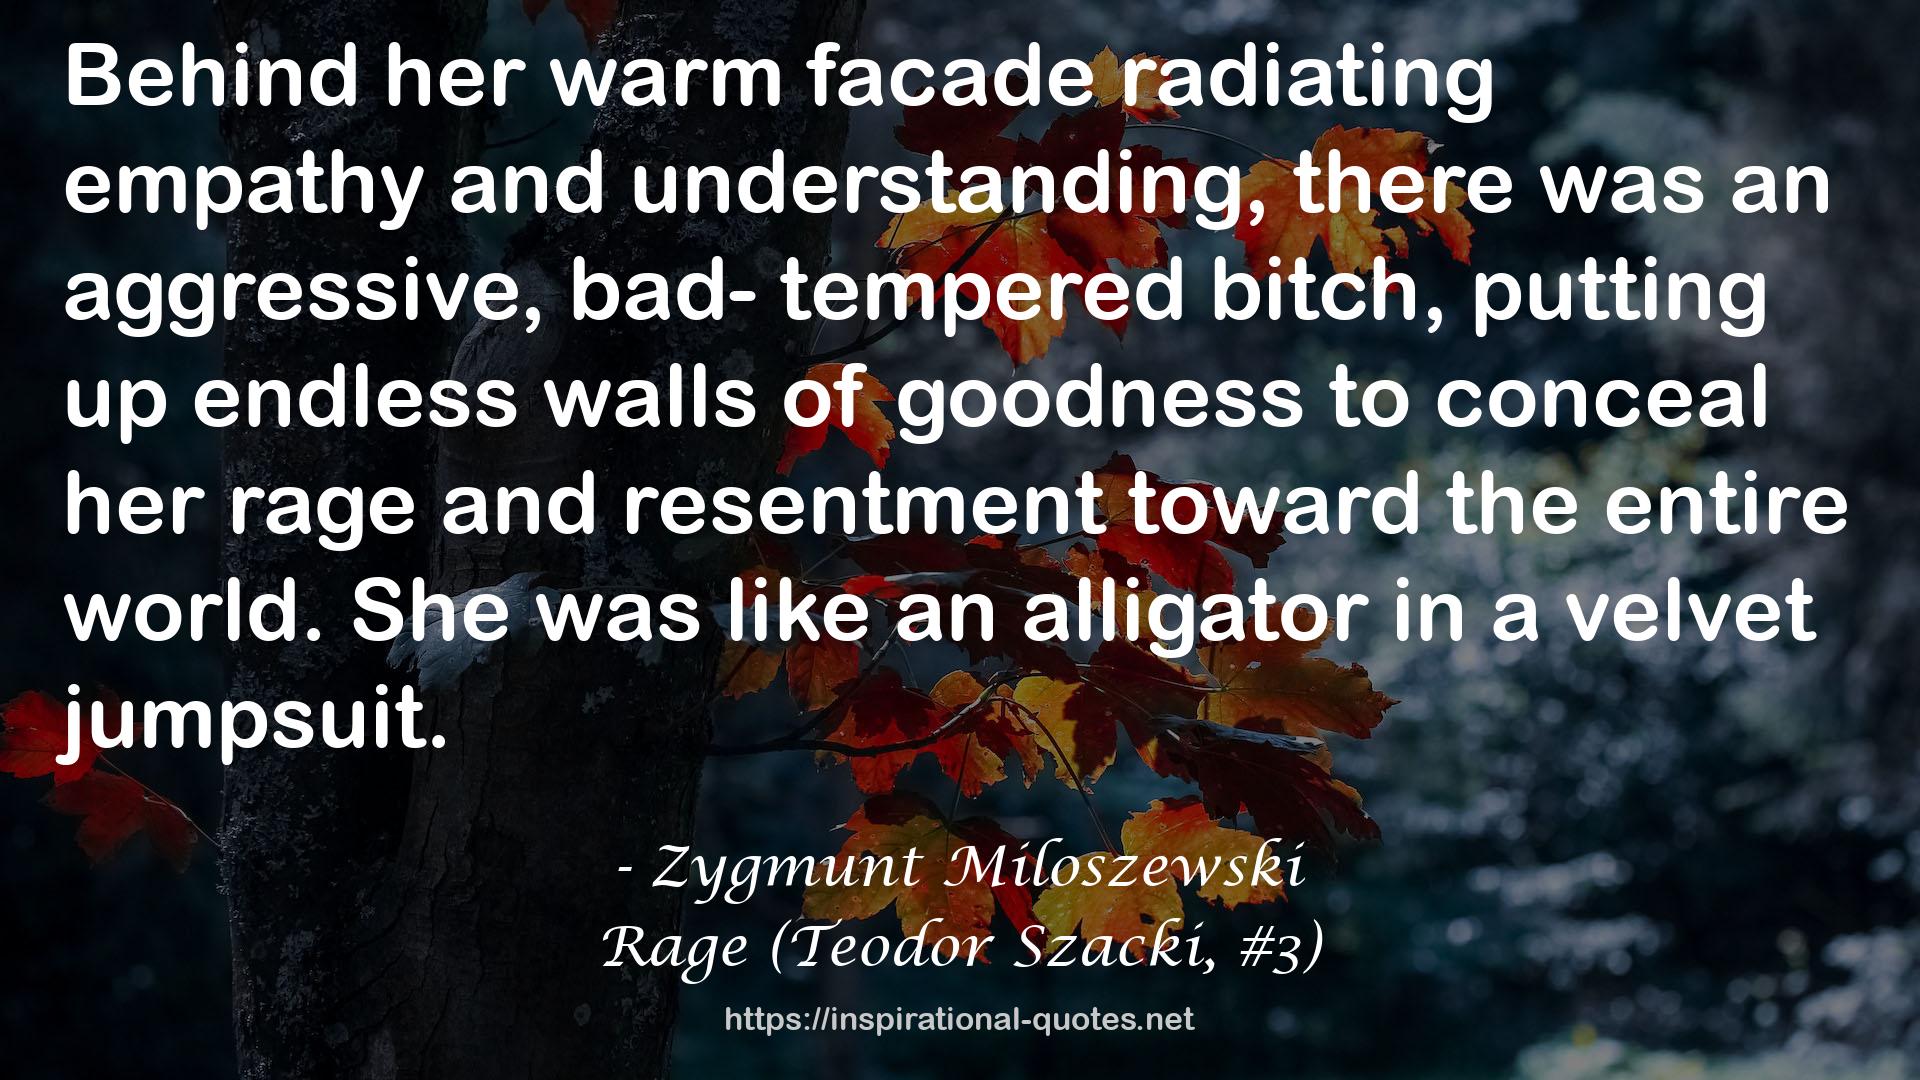 Rage (Teodor Szacki, #3) QUOTES